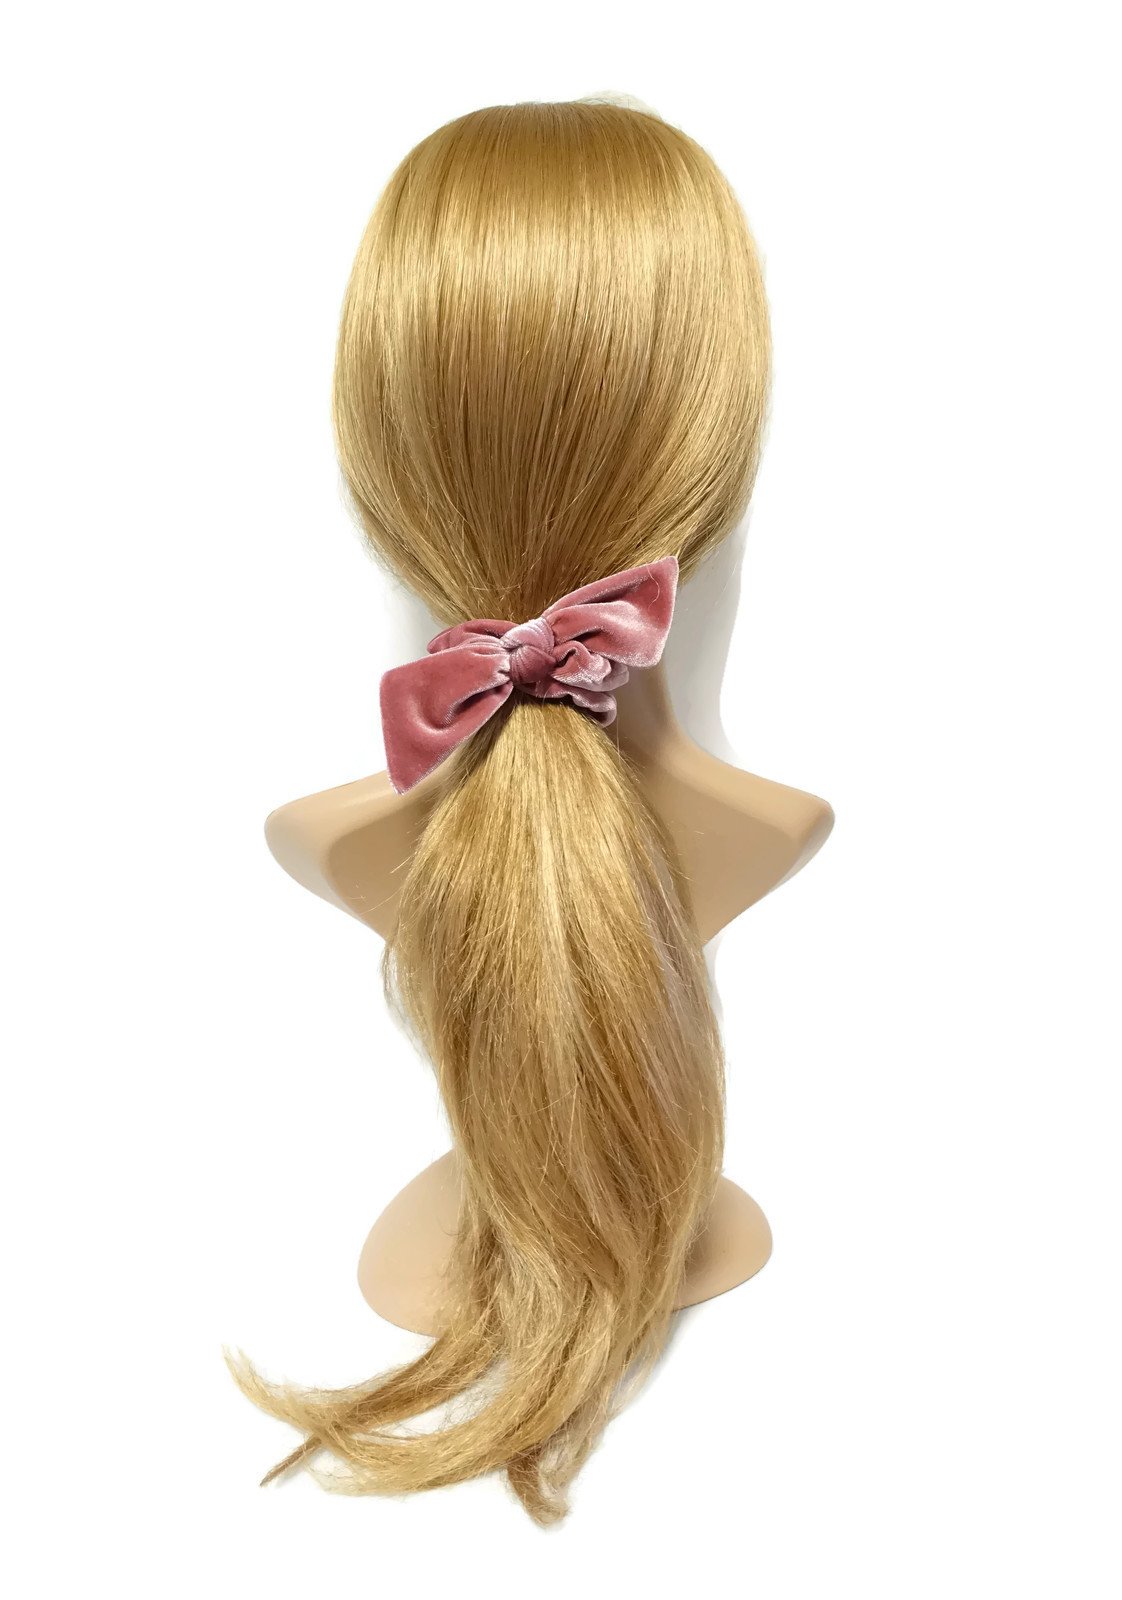 veryshine.com scrunchies/hair holder velvet bow knot scrunchies cute solid velvet scrunchy with hair bow women hair accessory